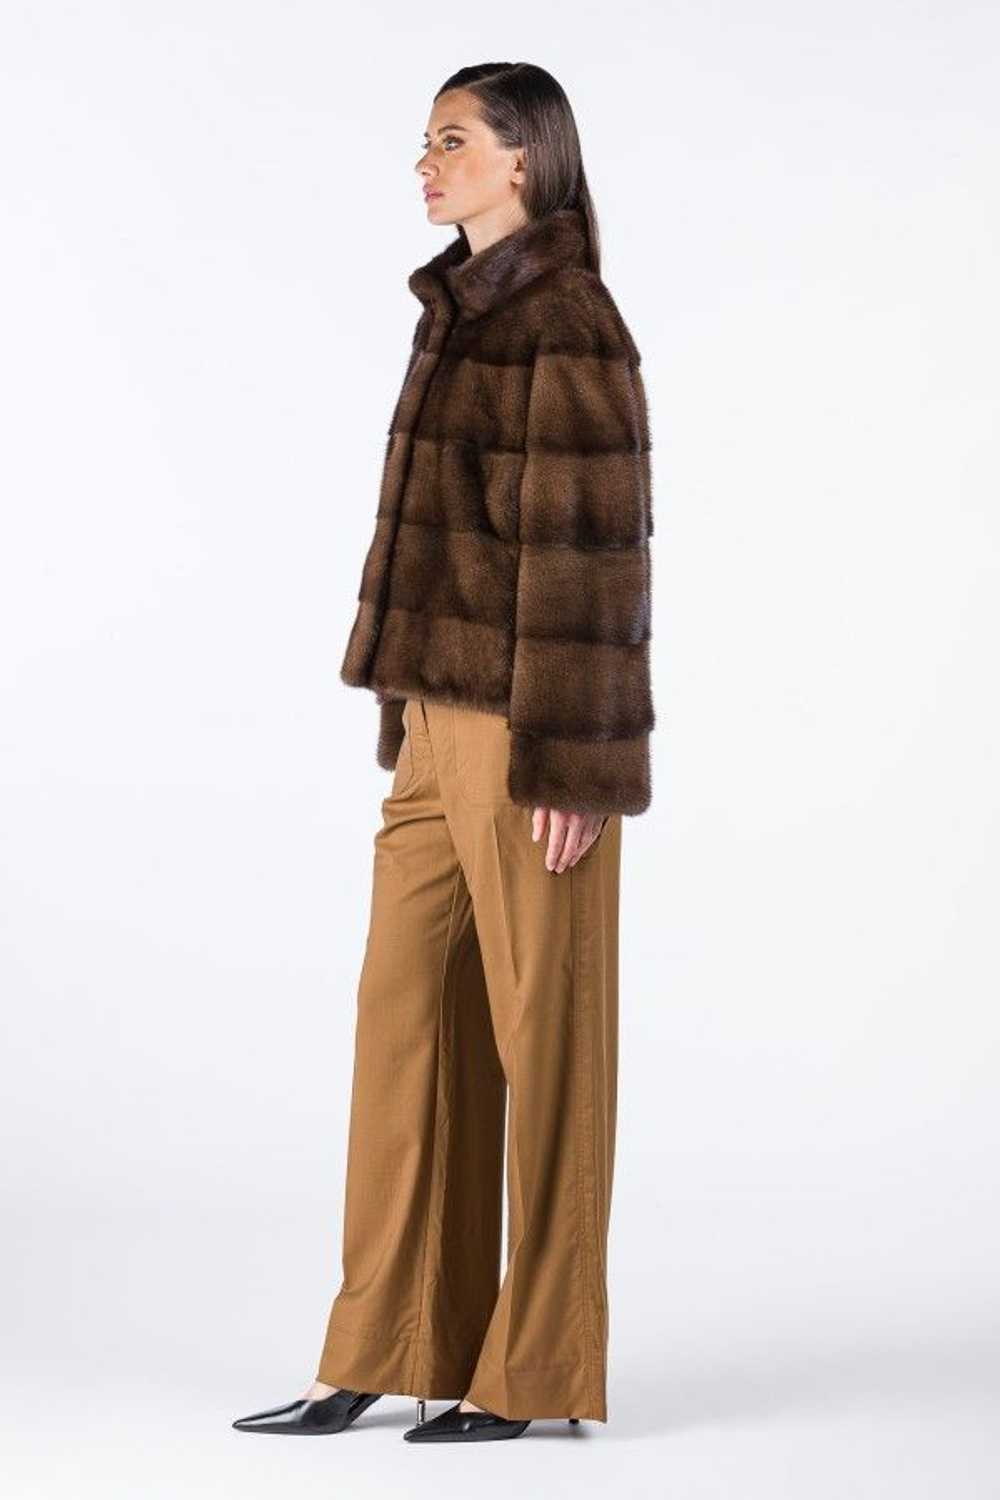 Mink Fur Coat WOMEN'S SHORT BROWN MINK COAT - image 2